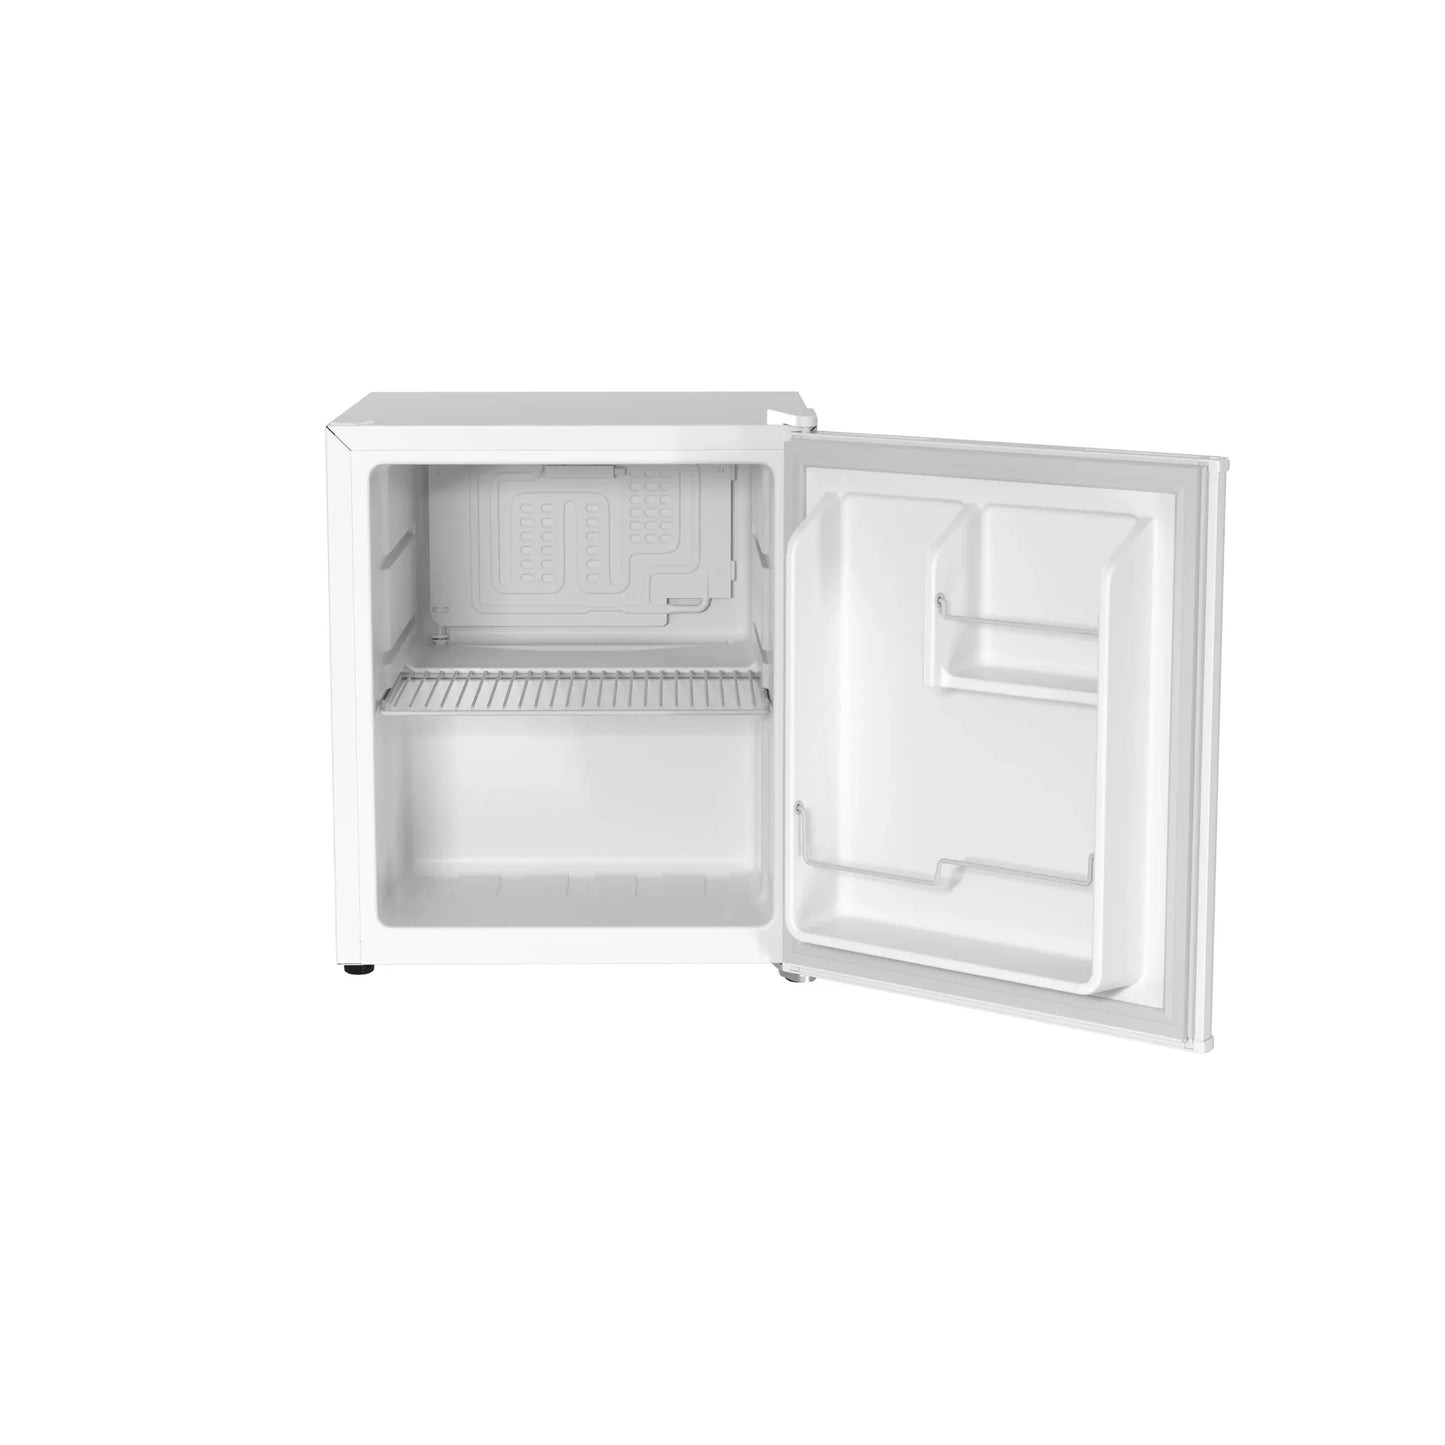 Husky 43L Solid Door 1.5 C.ft. Freestanding Counter-Top Mini Fridge in White